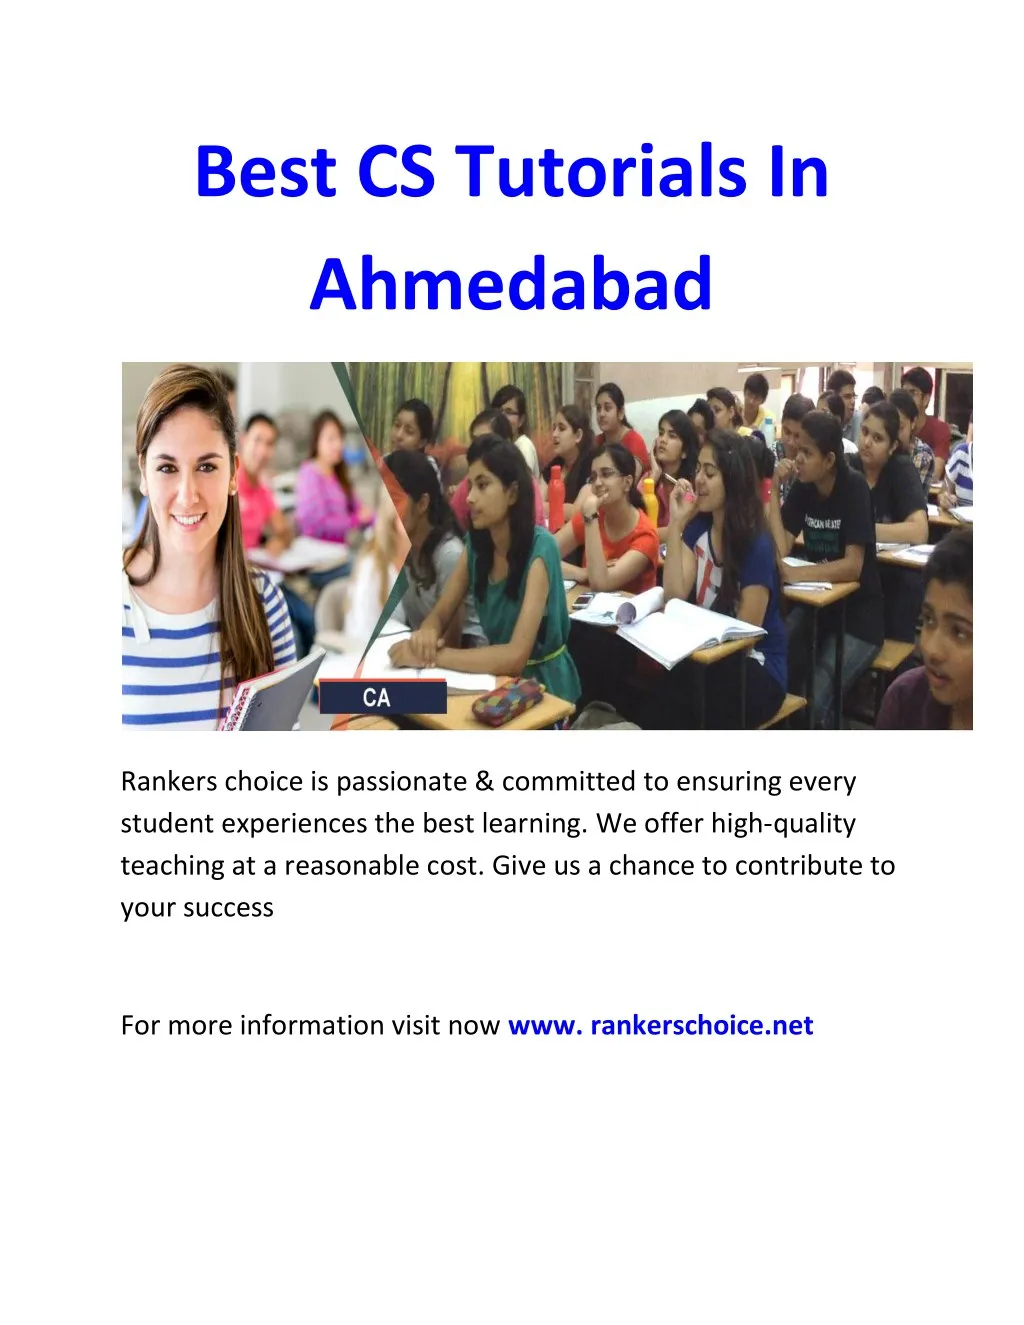 best cs tutorials in ahmedabad